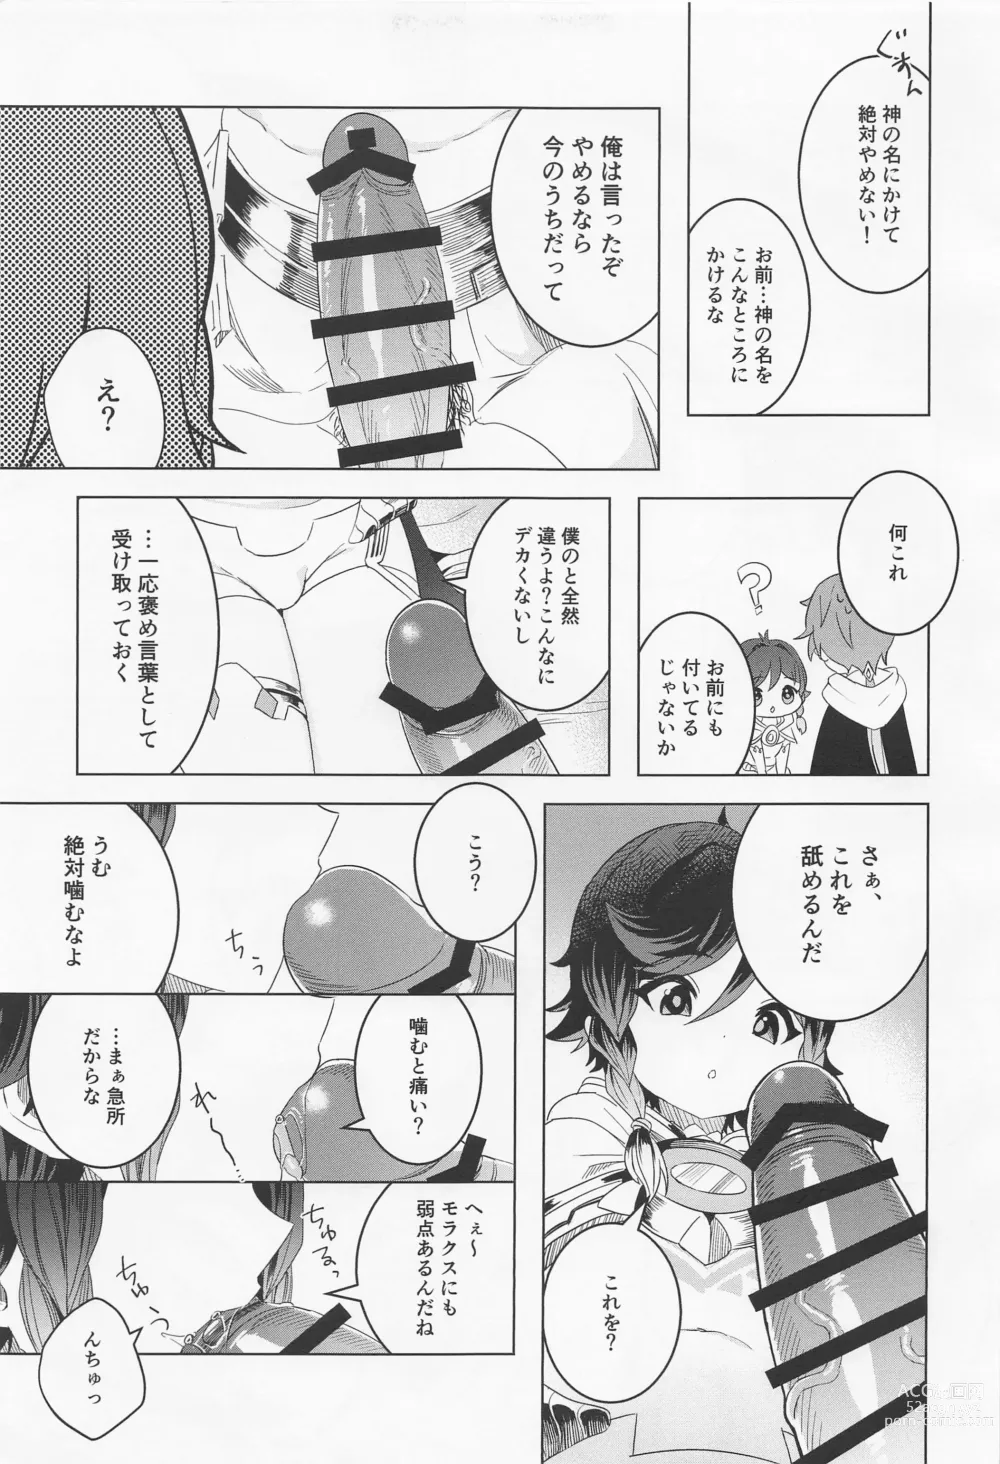 Page 10 of doujinshi Tomodachi Sotsugyou